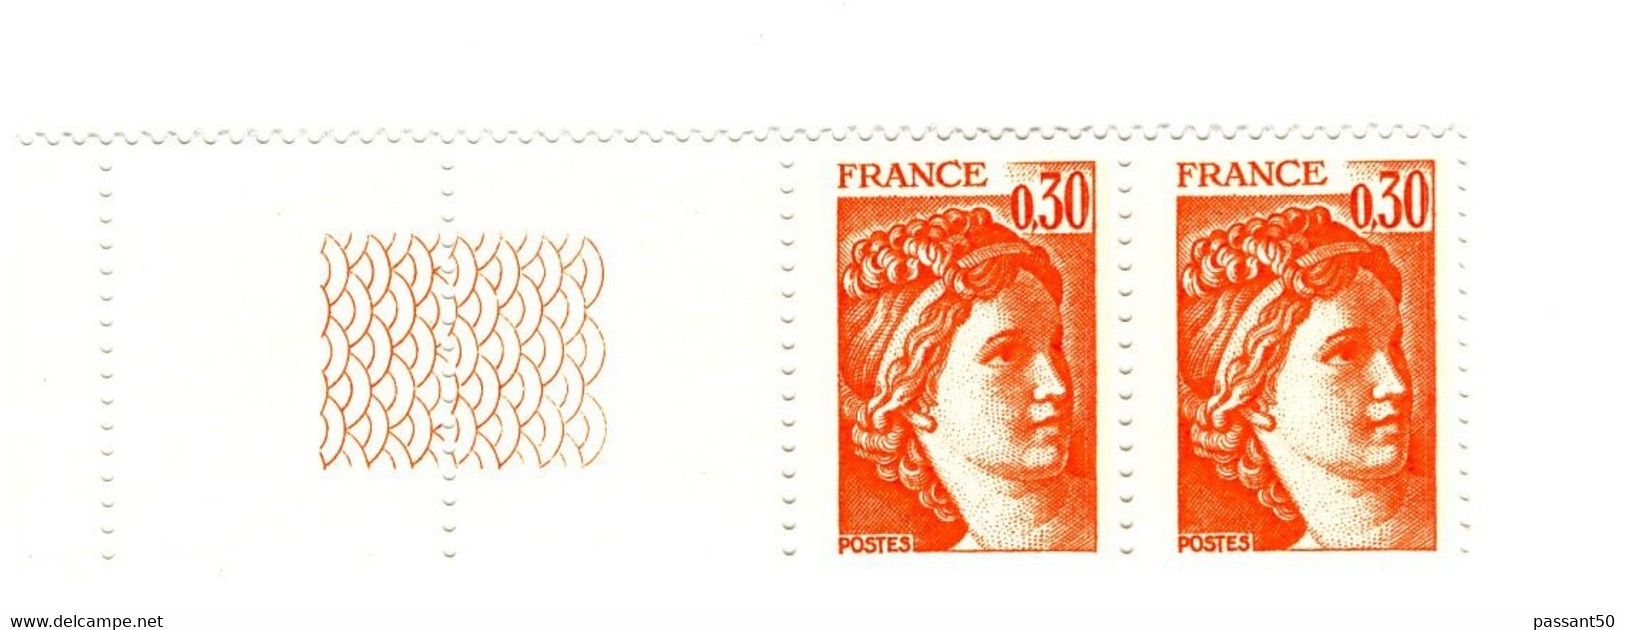 Sabine 0.30fr Orange YT 1968g En Paire Bord De Feuille Guilloché. Superbe Et Pas Courant, Voir Le Scan. Cote YT : 3 €. - Ungebraucht